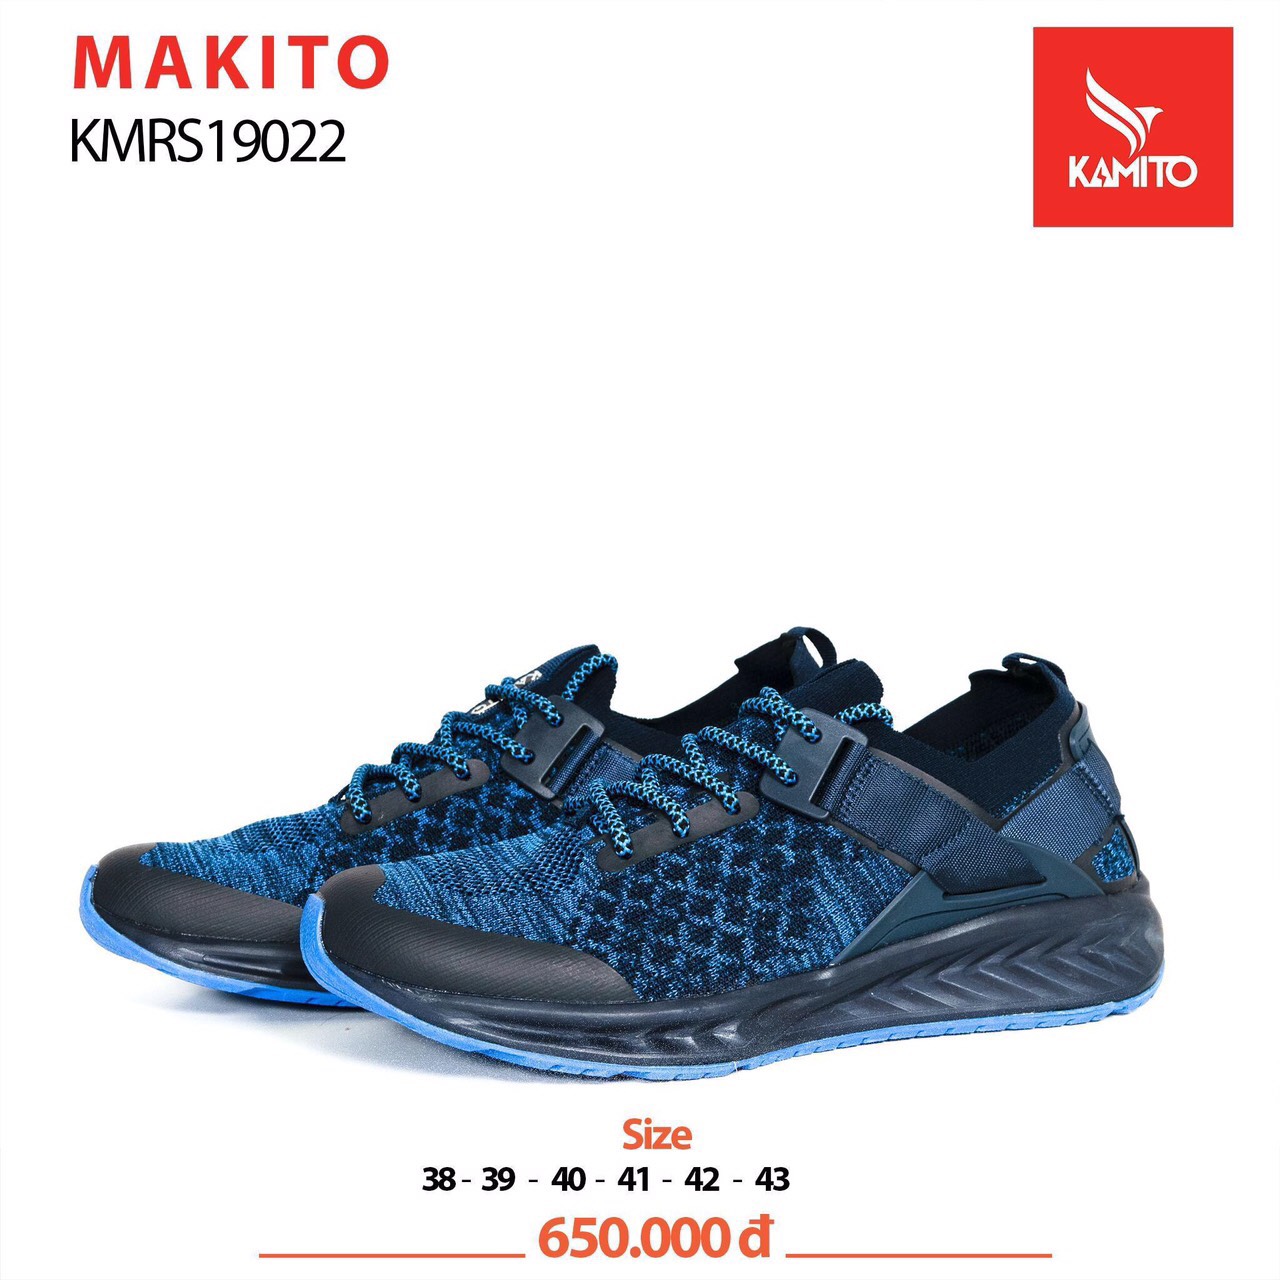 Giày thể thao nam Kamito MAKITO - Xanh navy